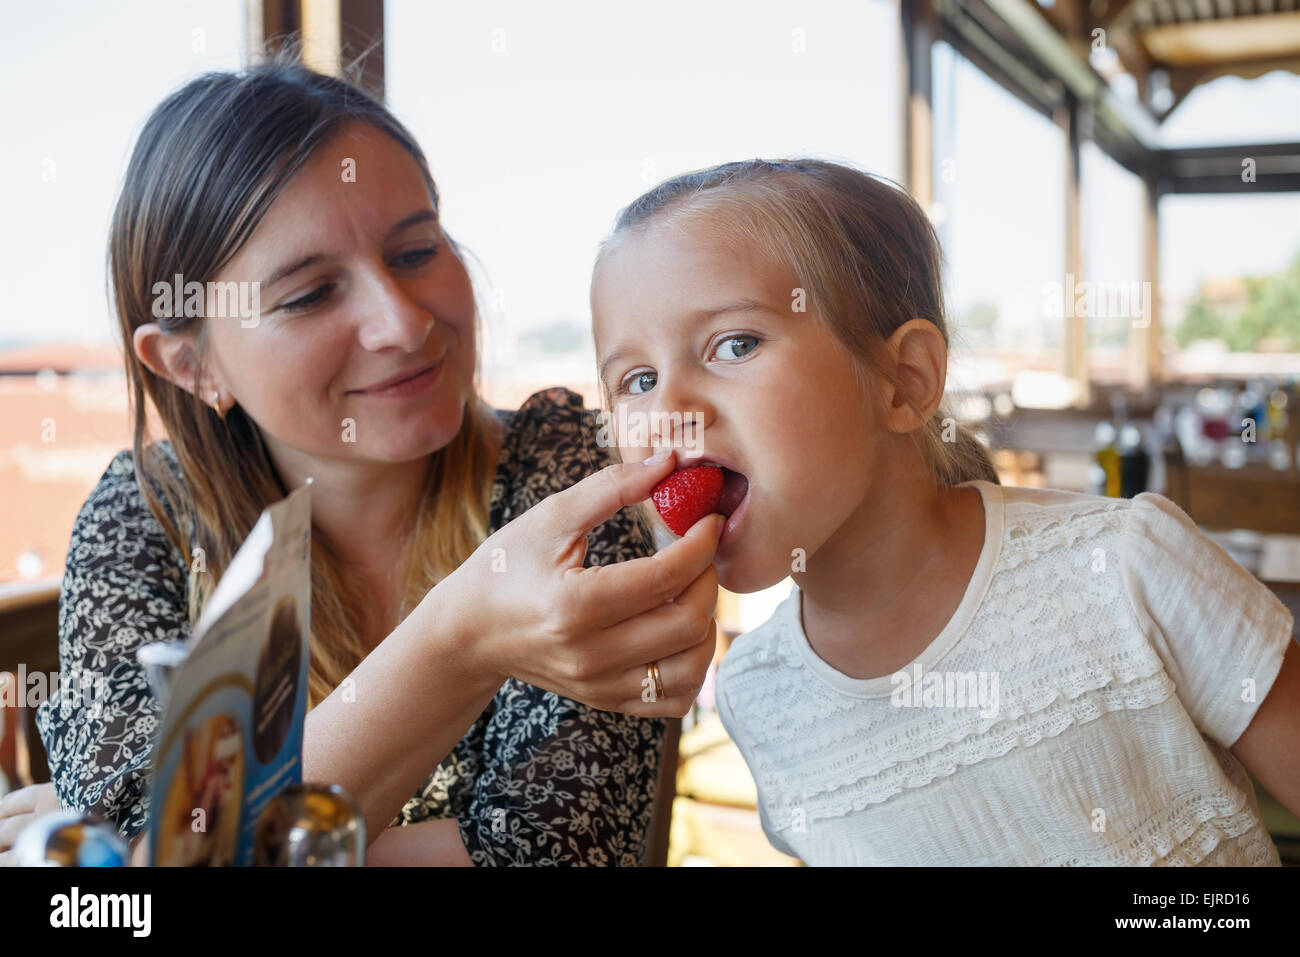 Mamma alimenta il bambino delizioso dolce fragole nel ristorante. Profondità di campo. Focus sul bambino del viso. Foto Stock